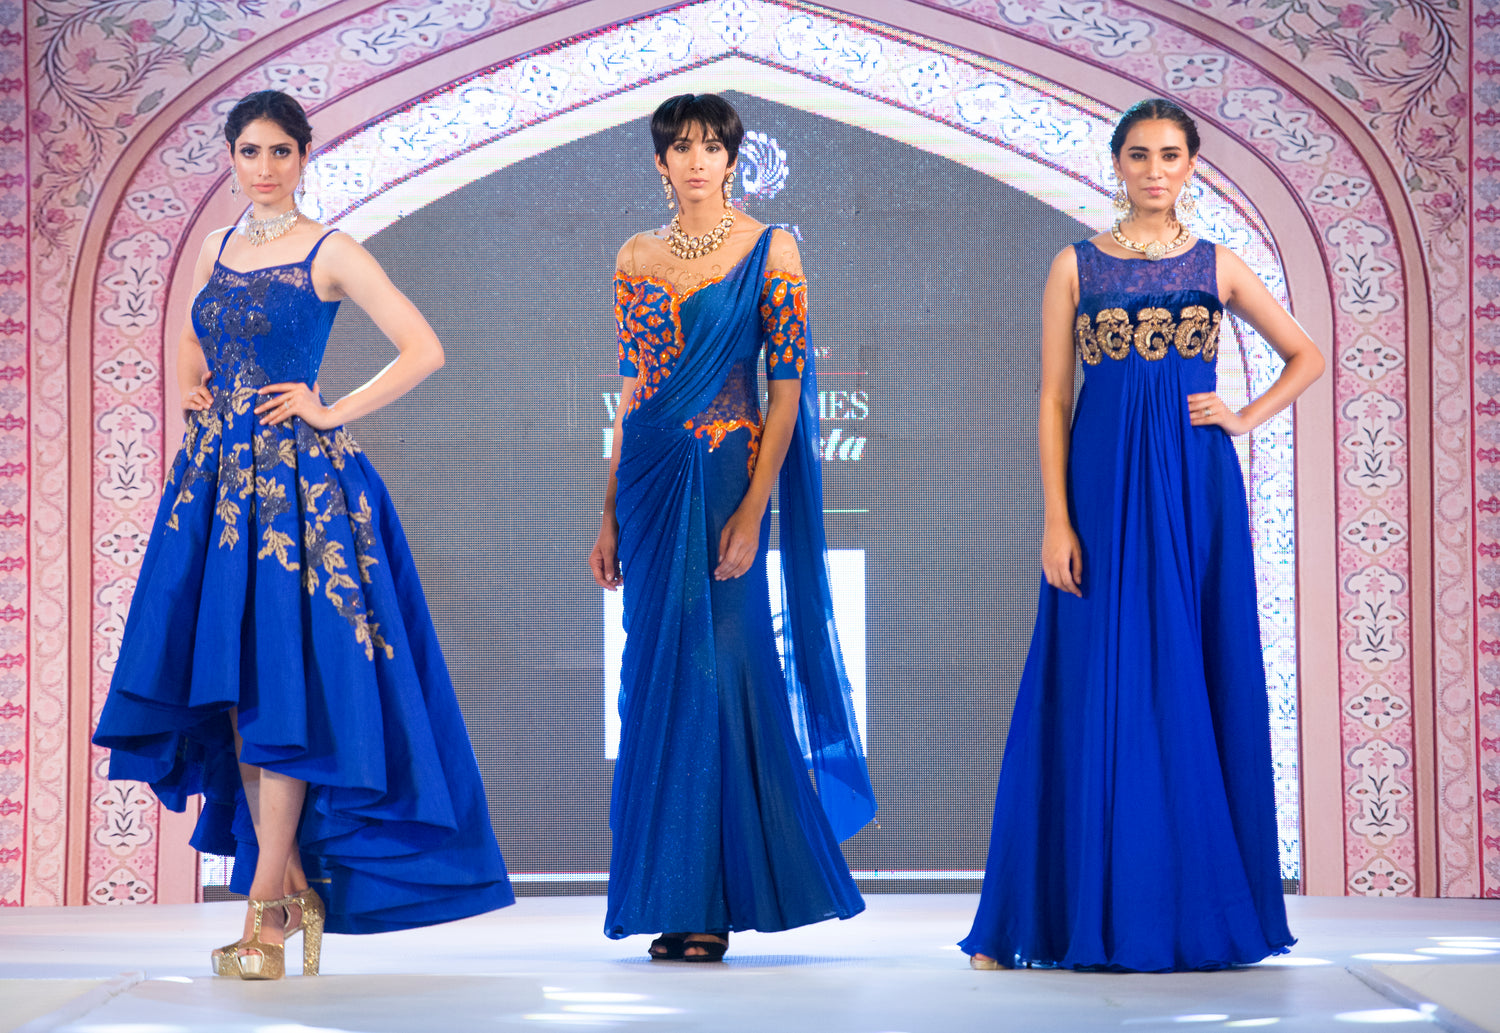 Saaj By Ankita, Indian Wear, Indian Designer, Indian Fashion Designer, Shop Indian Wear, Designer clothes India, Indian Fashion, Top Fashion Designer India